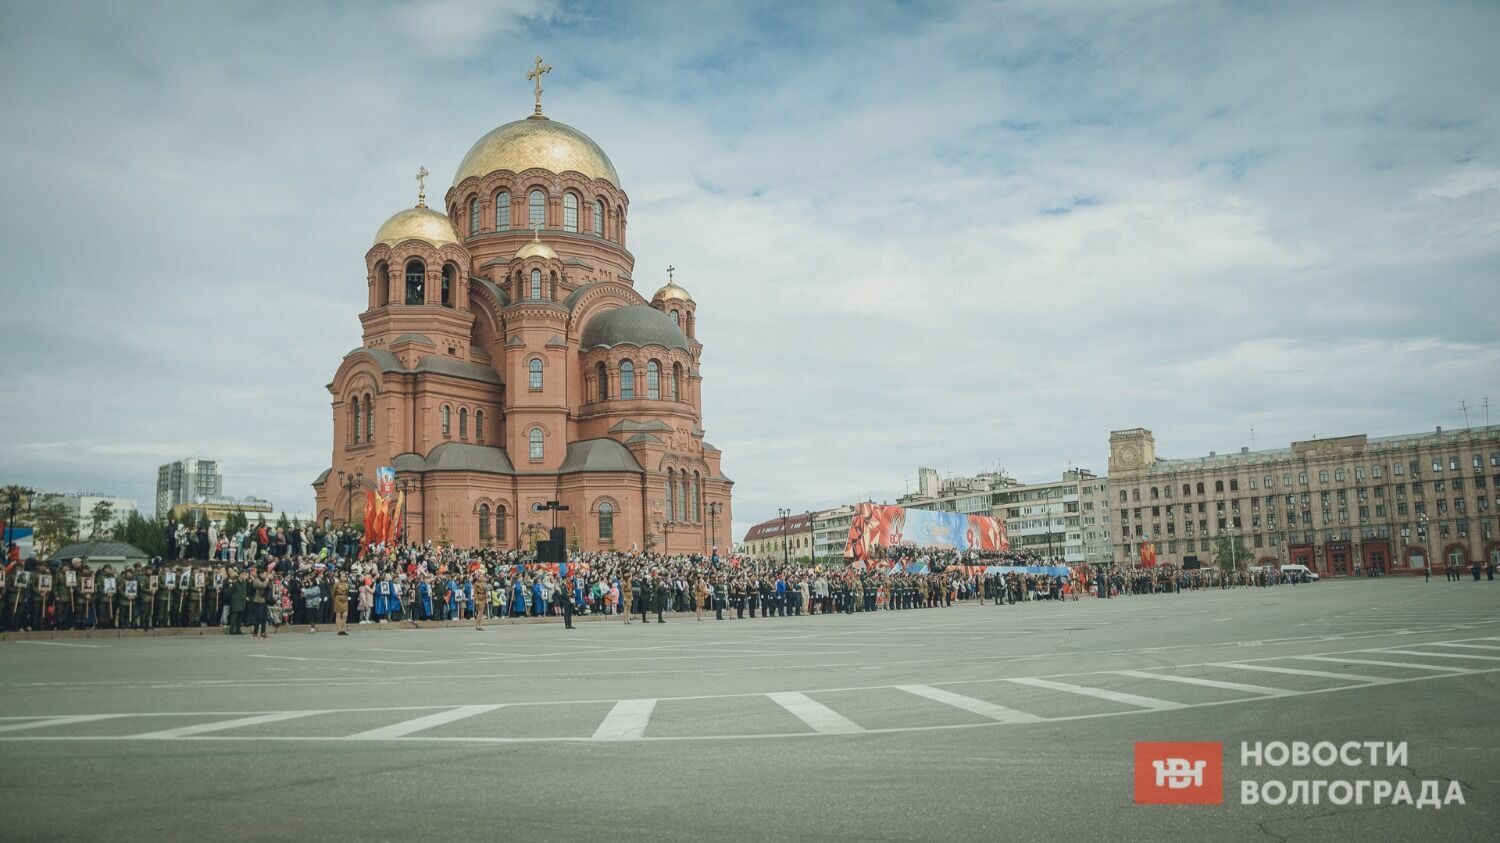 Площадь Павших Борцов в Волгограде была до отказу забита людьми.